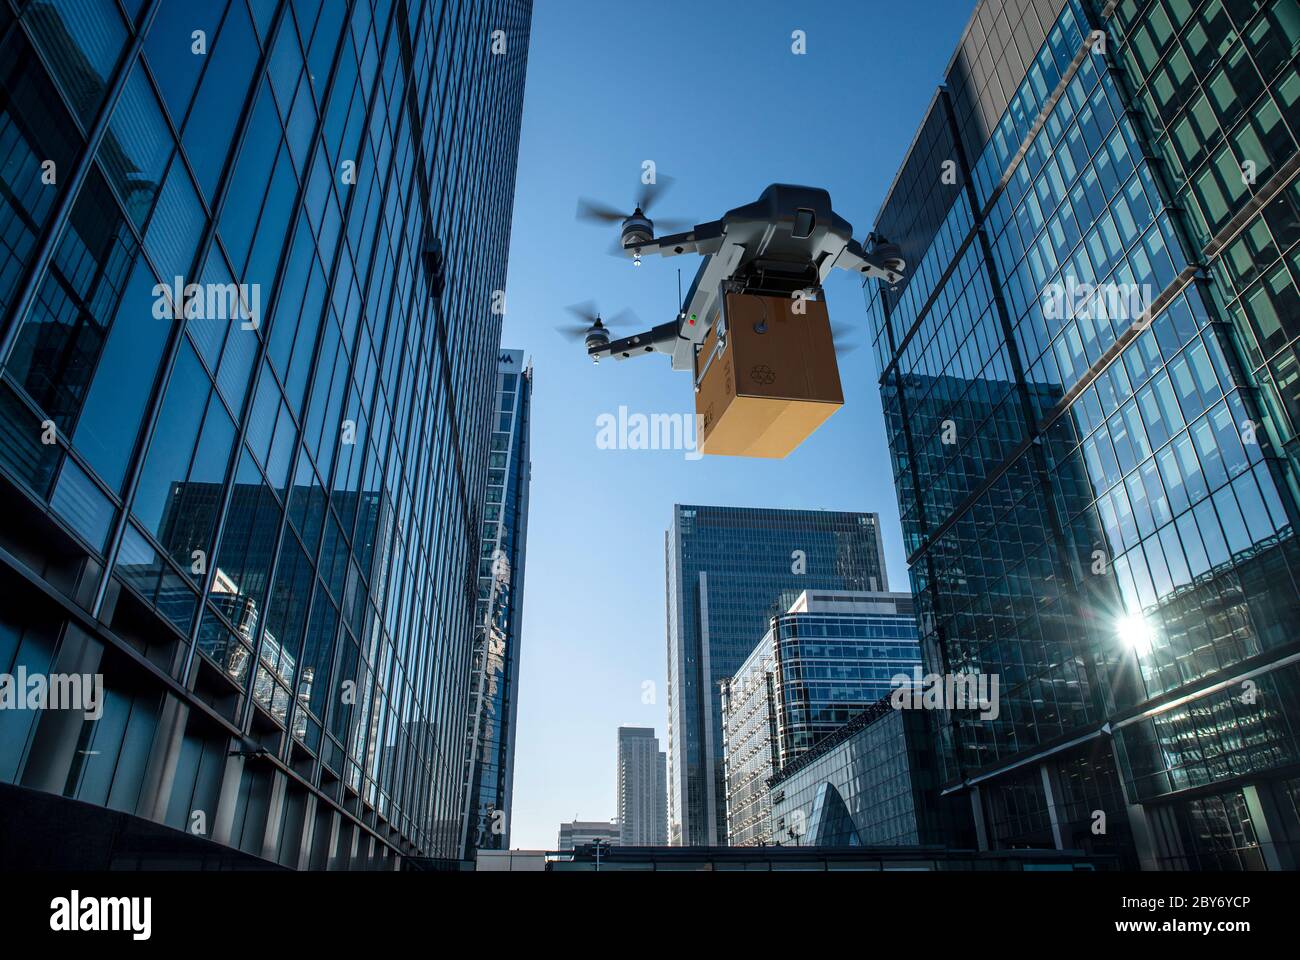 Drohne, die Paket zwischen Hochhäusern, London, Großbritannien Stockfoto